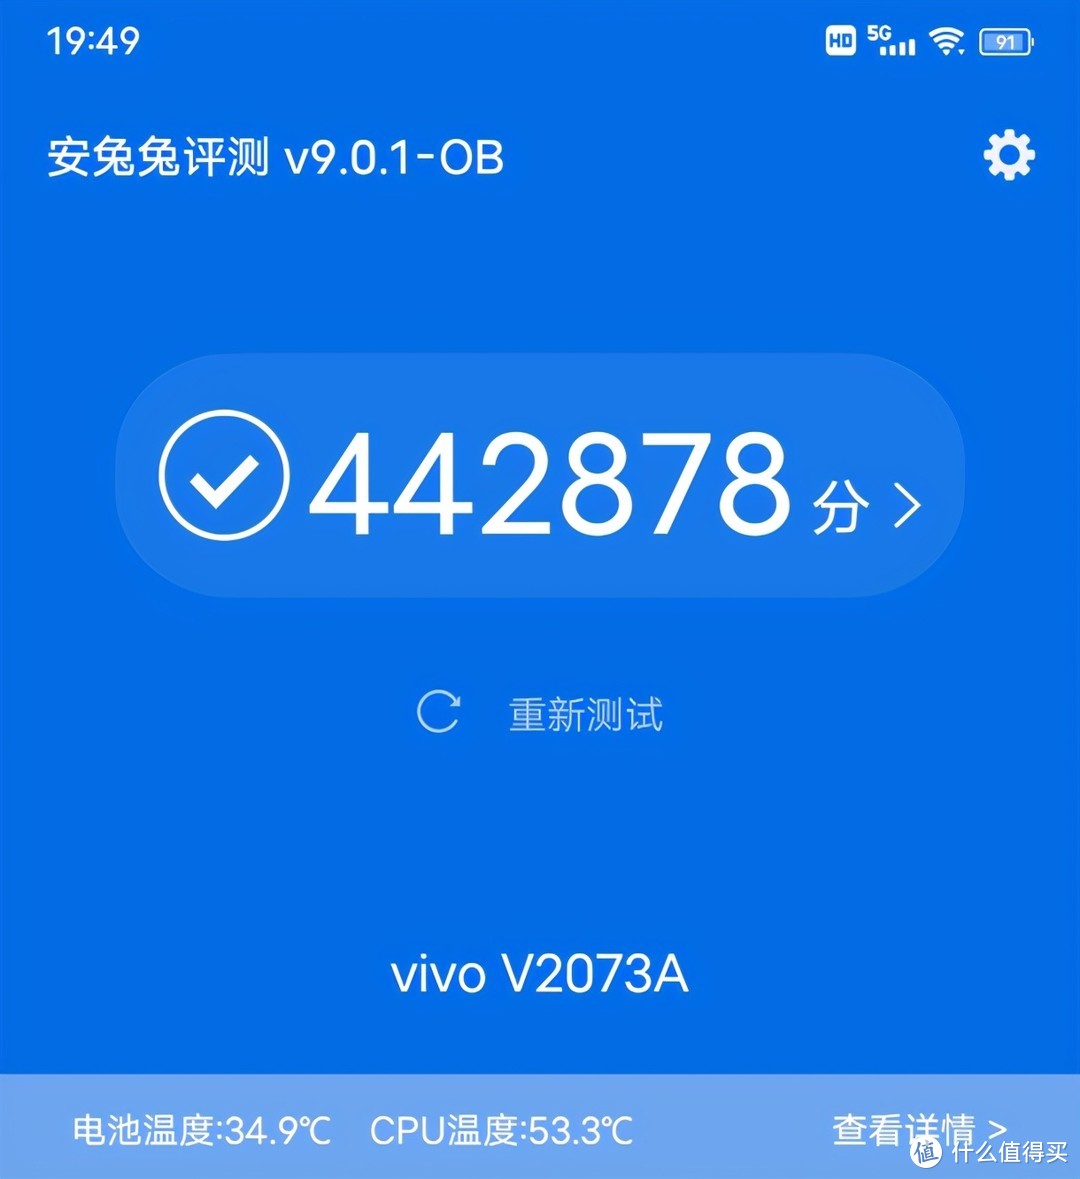 千元旗舰首选iQOO Z3，一文告诉你怎么入手最划算